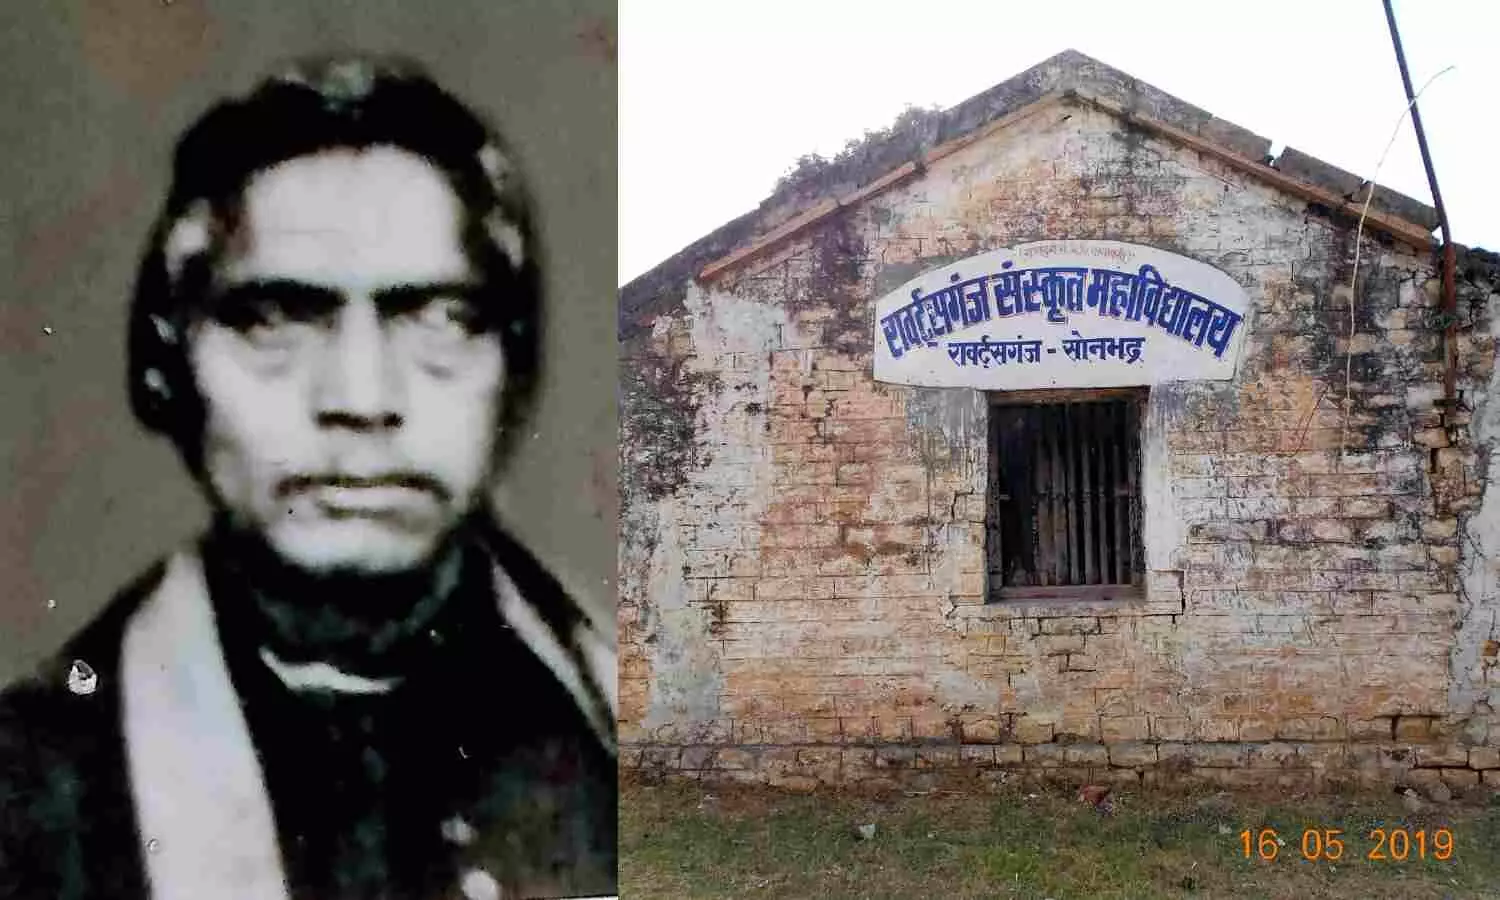 Balram Das Kesharwani